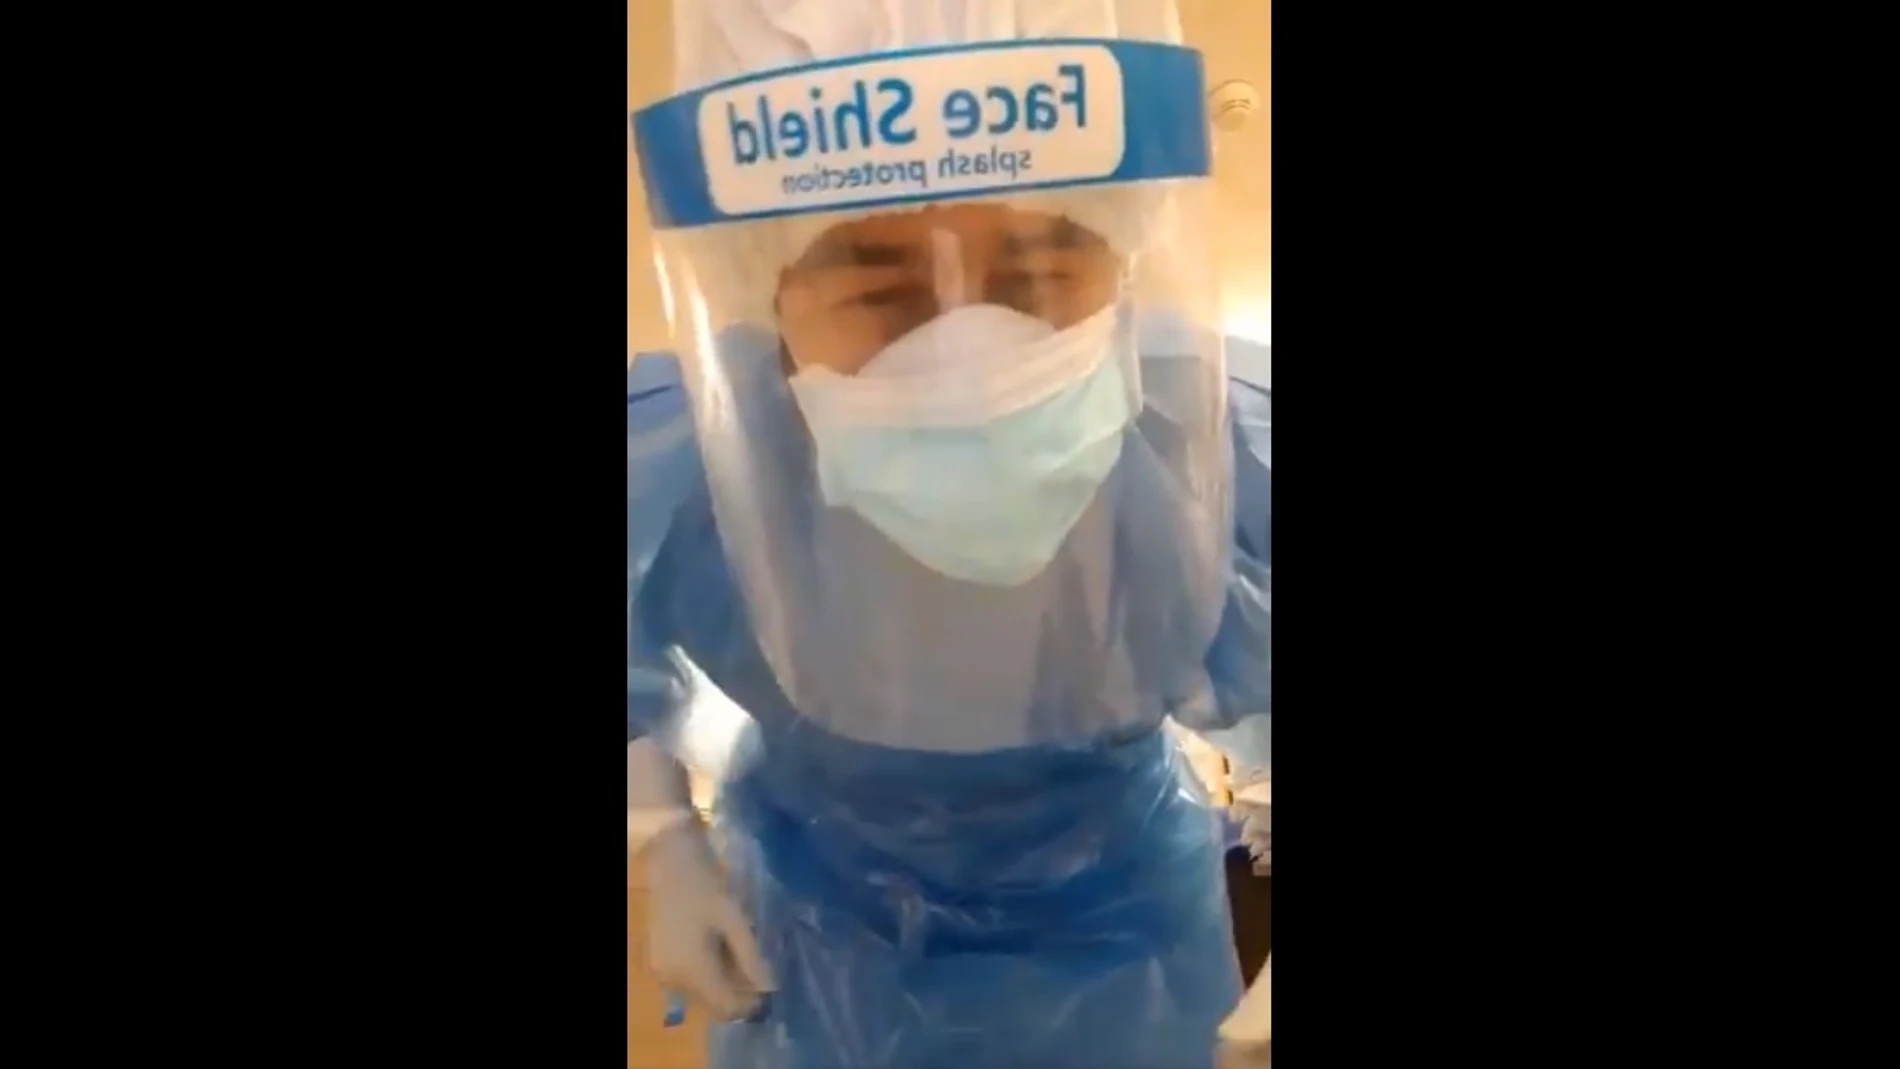 Vídeo grabado por un sanitario siguiendo el protocolo de seguridad